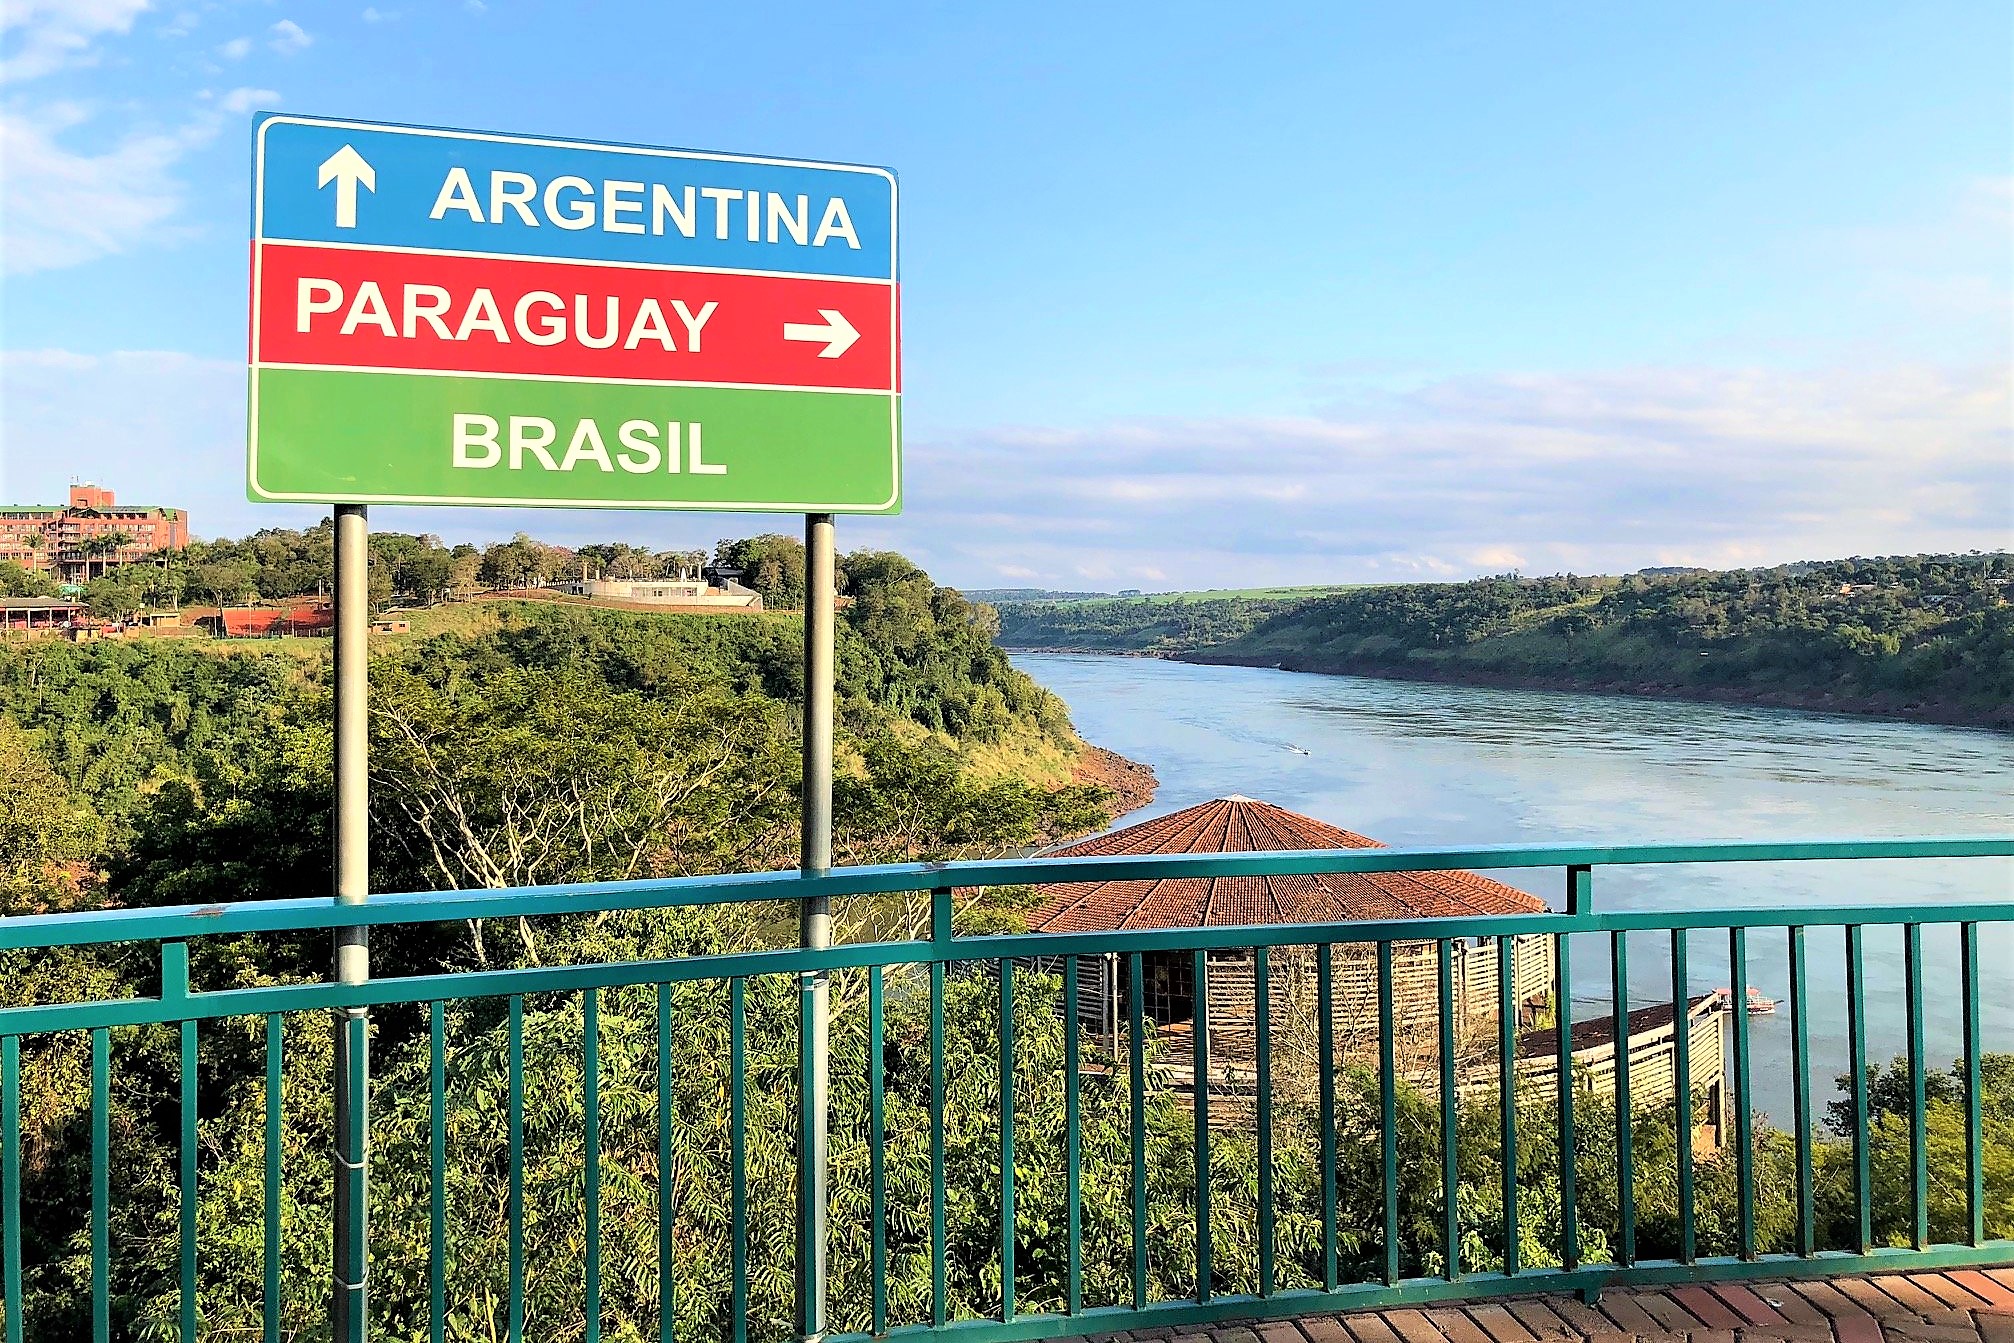 "Vivre au Brésil" - Le lieu symbolique des "3 frontières" Brésil, Argentine et Paraguay se situe au confluent de Rio Paraná et du Rio Iguaçu, en aval des Chutes d'Iguaçu